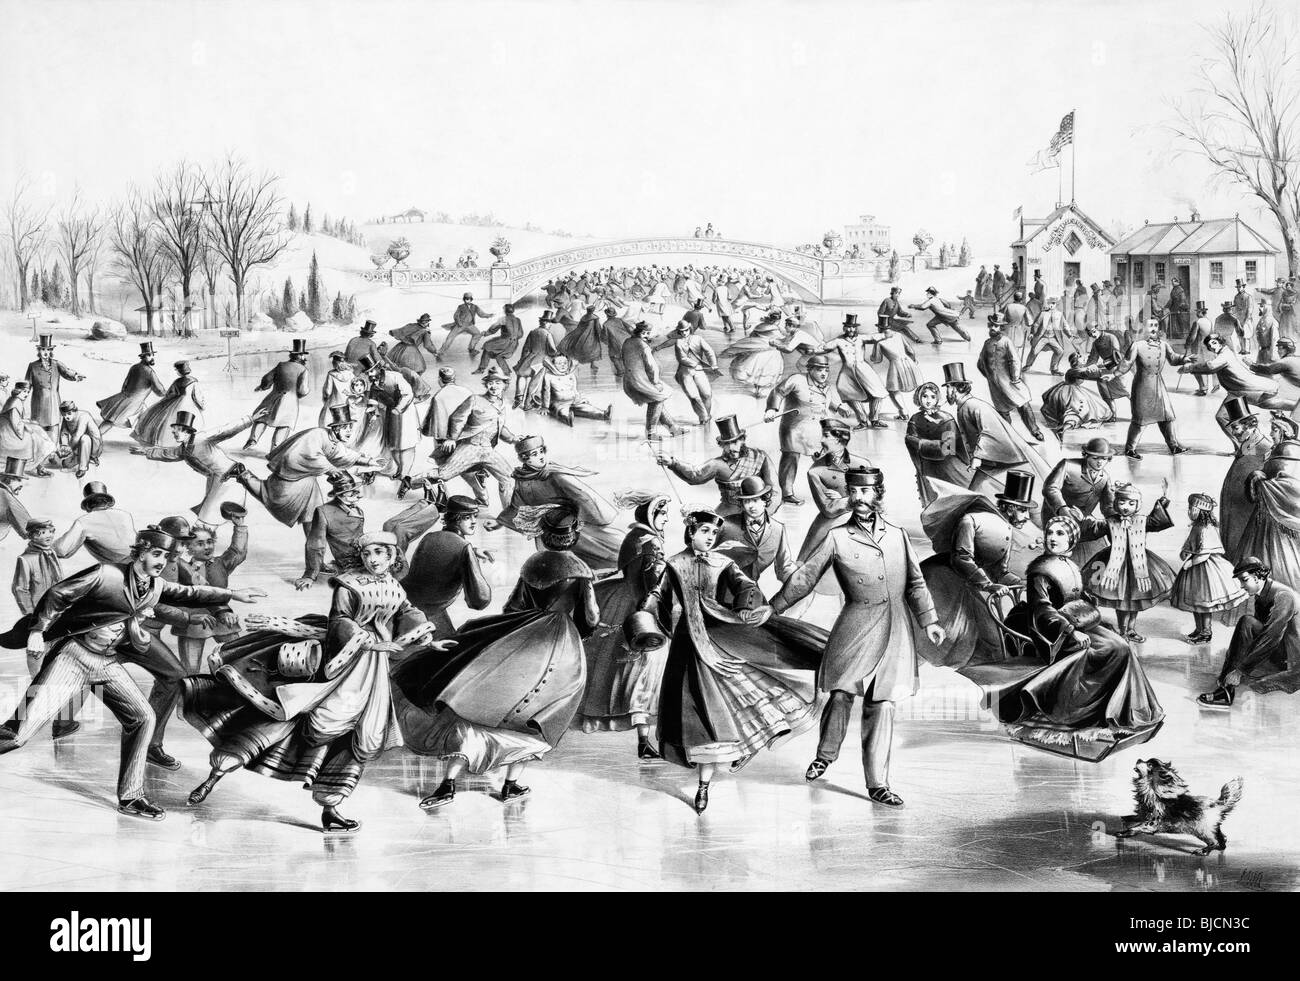 Lithographie en noir et blanc vers 1862 par Currier & Ives intitulée "Central Park Winter - l'étang de patinage". Banque D'Images